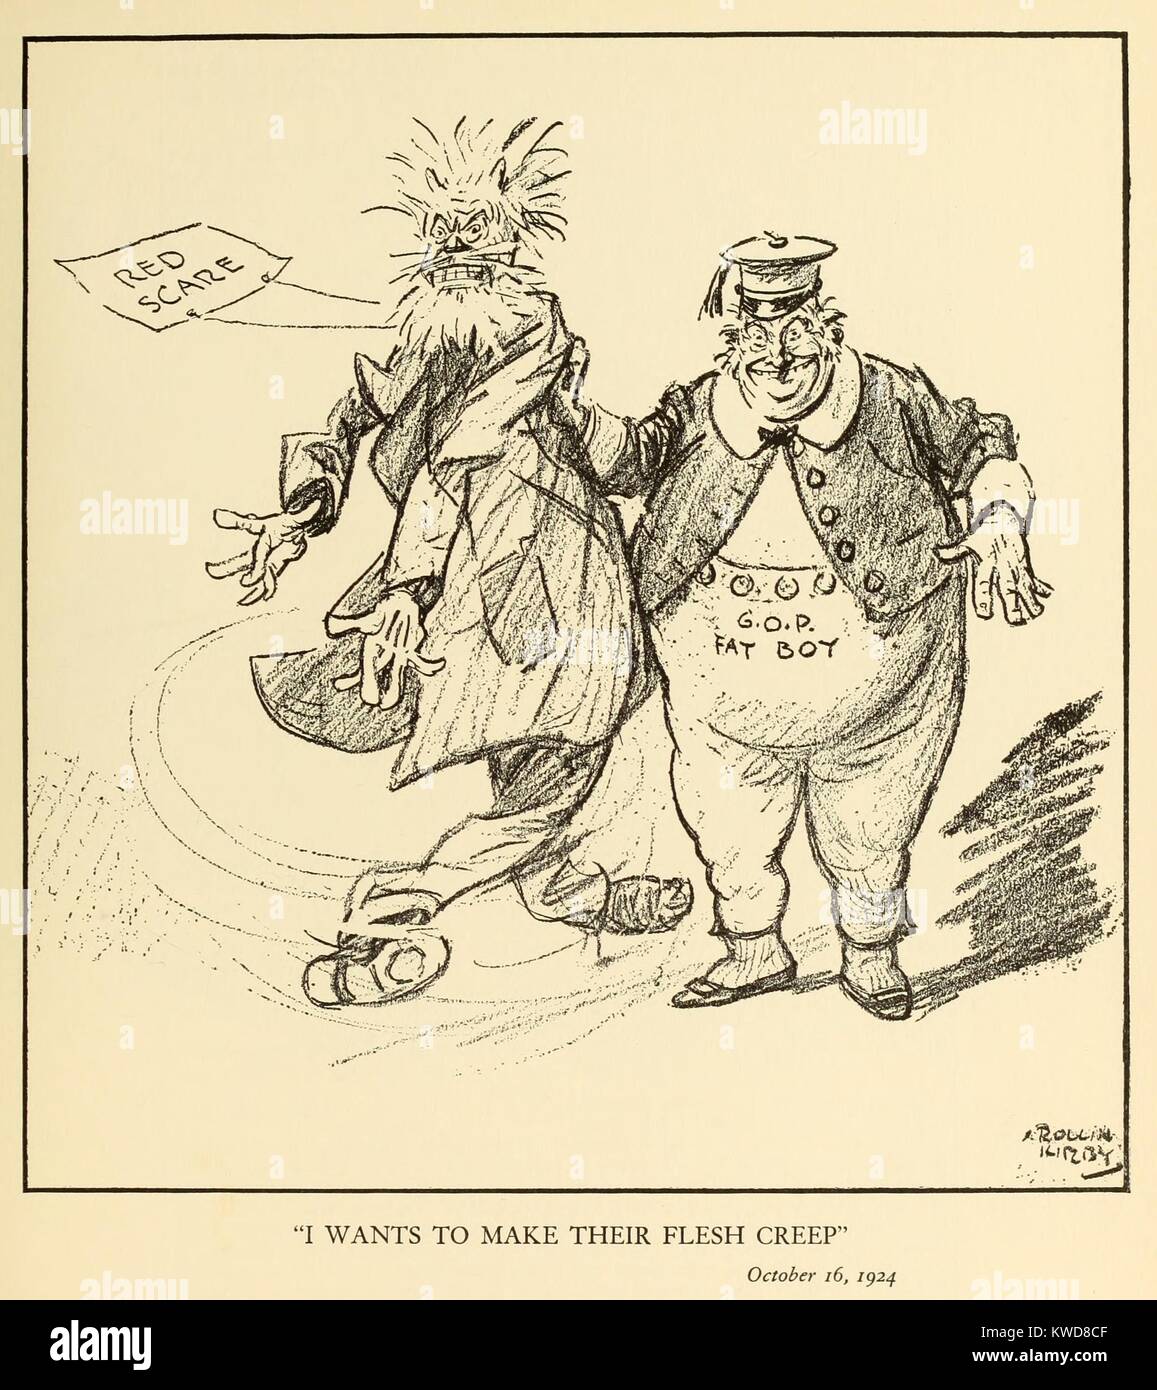 Je VEUT FAIRE DE LEUR CHAIR fluage. Caricature politique montrant un 'G.O.P. Fatboy' agiter une marionnette représentant la menace Red Scare. Par New York World célèbre caricaturiste, Rollin Kirby, le 24 octobre 1920. (BSLOC   2015 17 242) Banque D'Images